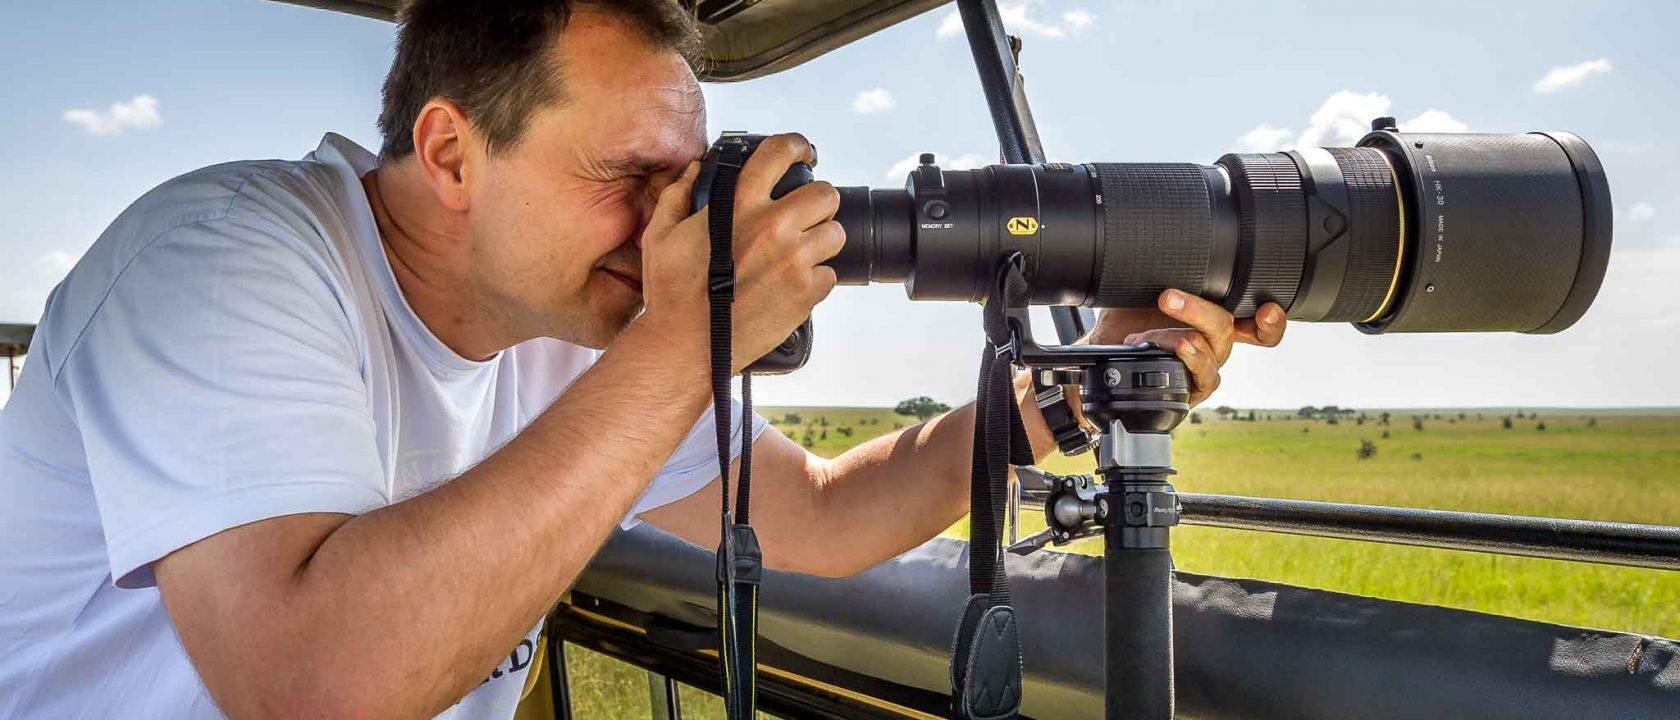 Größe spielt doch eine Rolle: Thorge Berger in Tanzania mit 200-400mm Objektiv